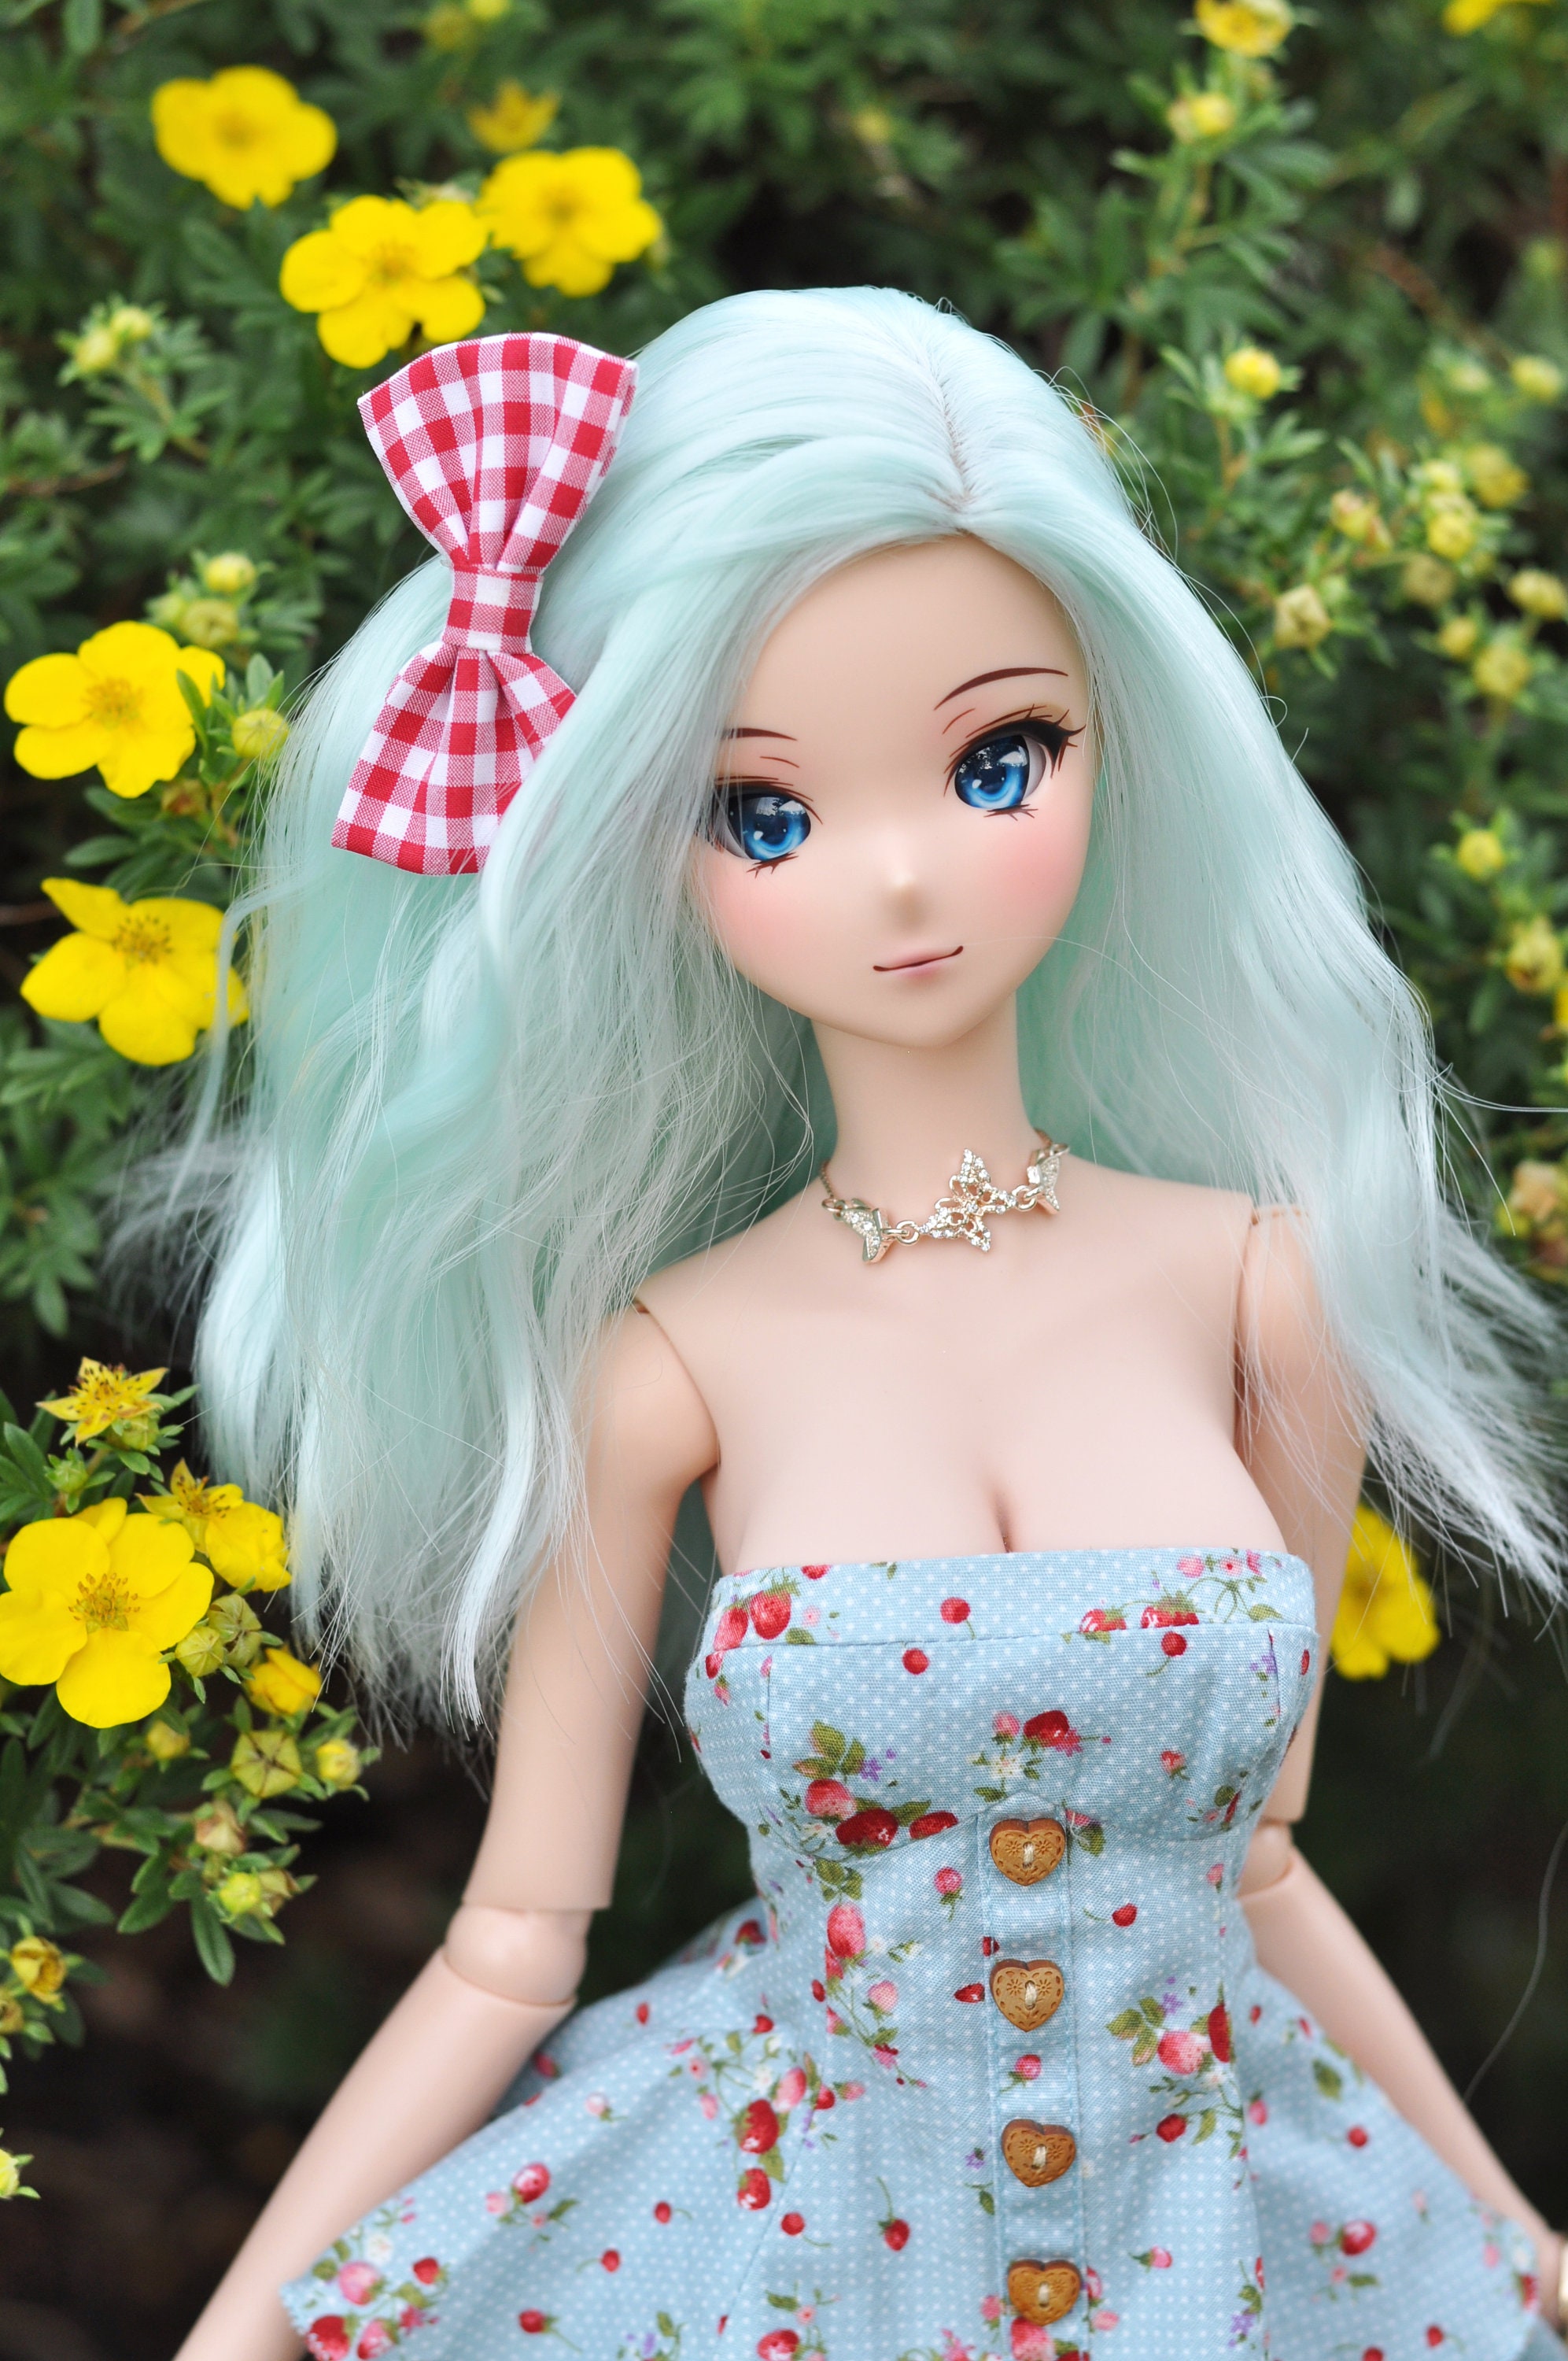 1/6 scala PARRUCCA Personalizzata per Barbie Fashion Doll dimensione della  testa 3-4 Bjd Dollfie pukipuki BF Pocket Doll Parrucca Zazou Bambole -   Italia